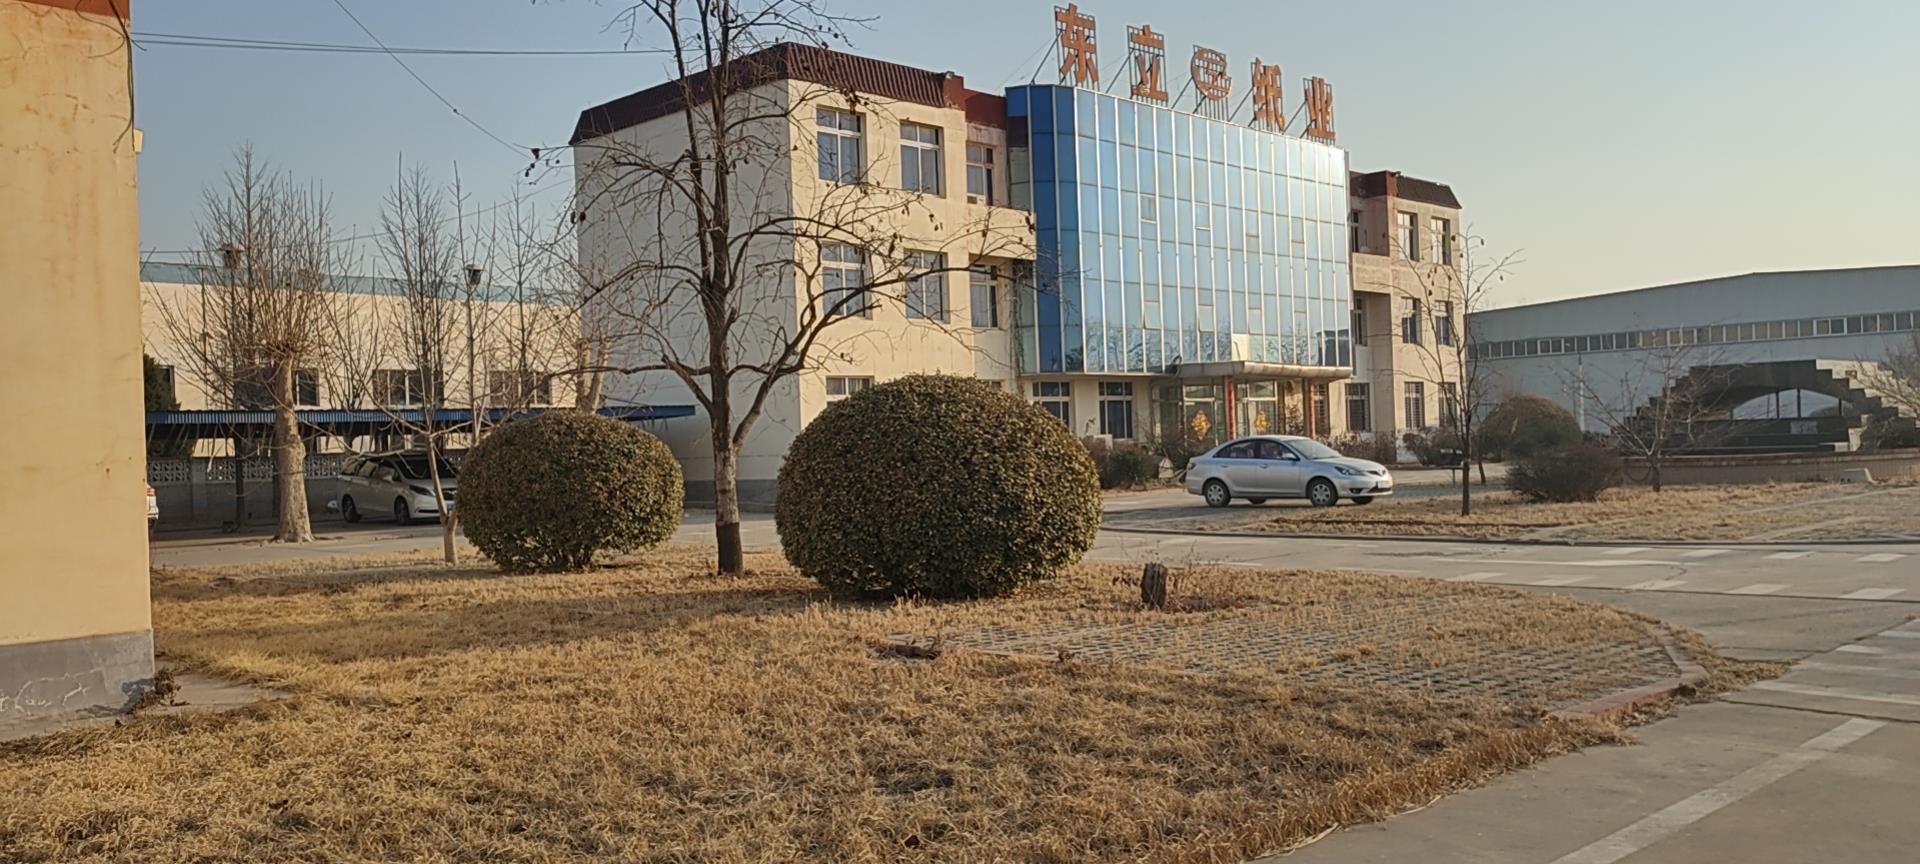  涿市京南经济开发区，有工厂占地106亩，交通便利，配套设施齐全。